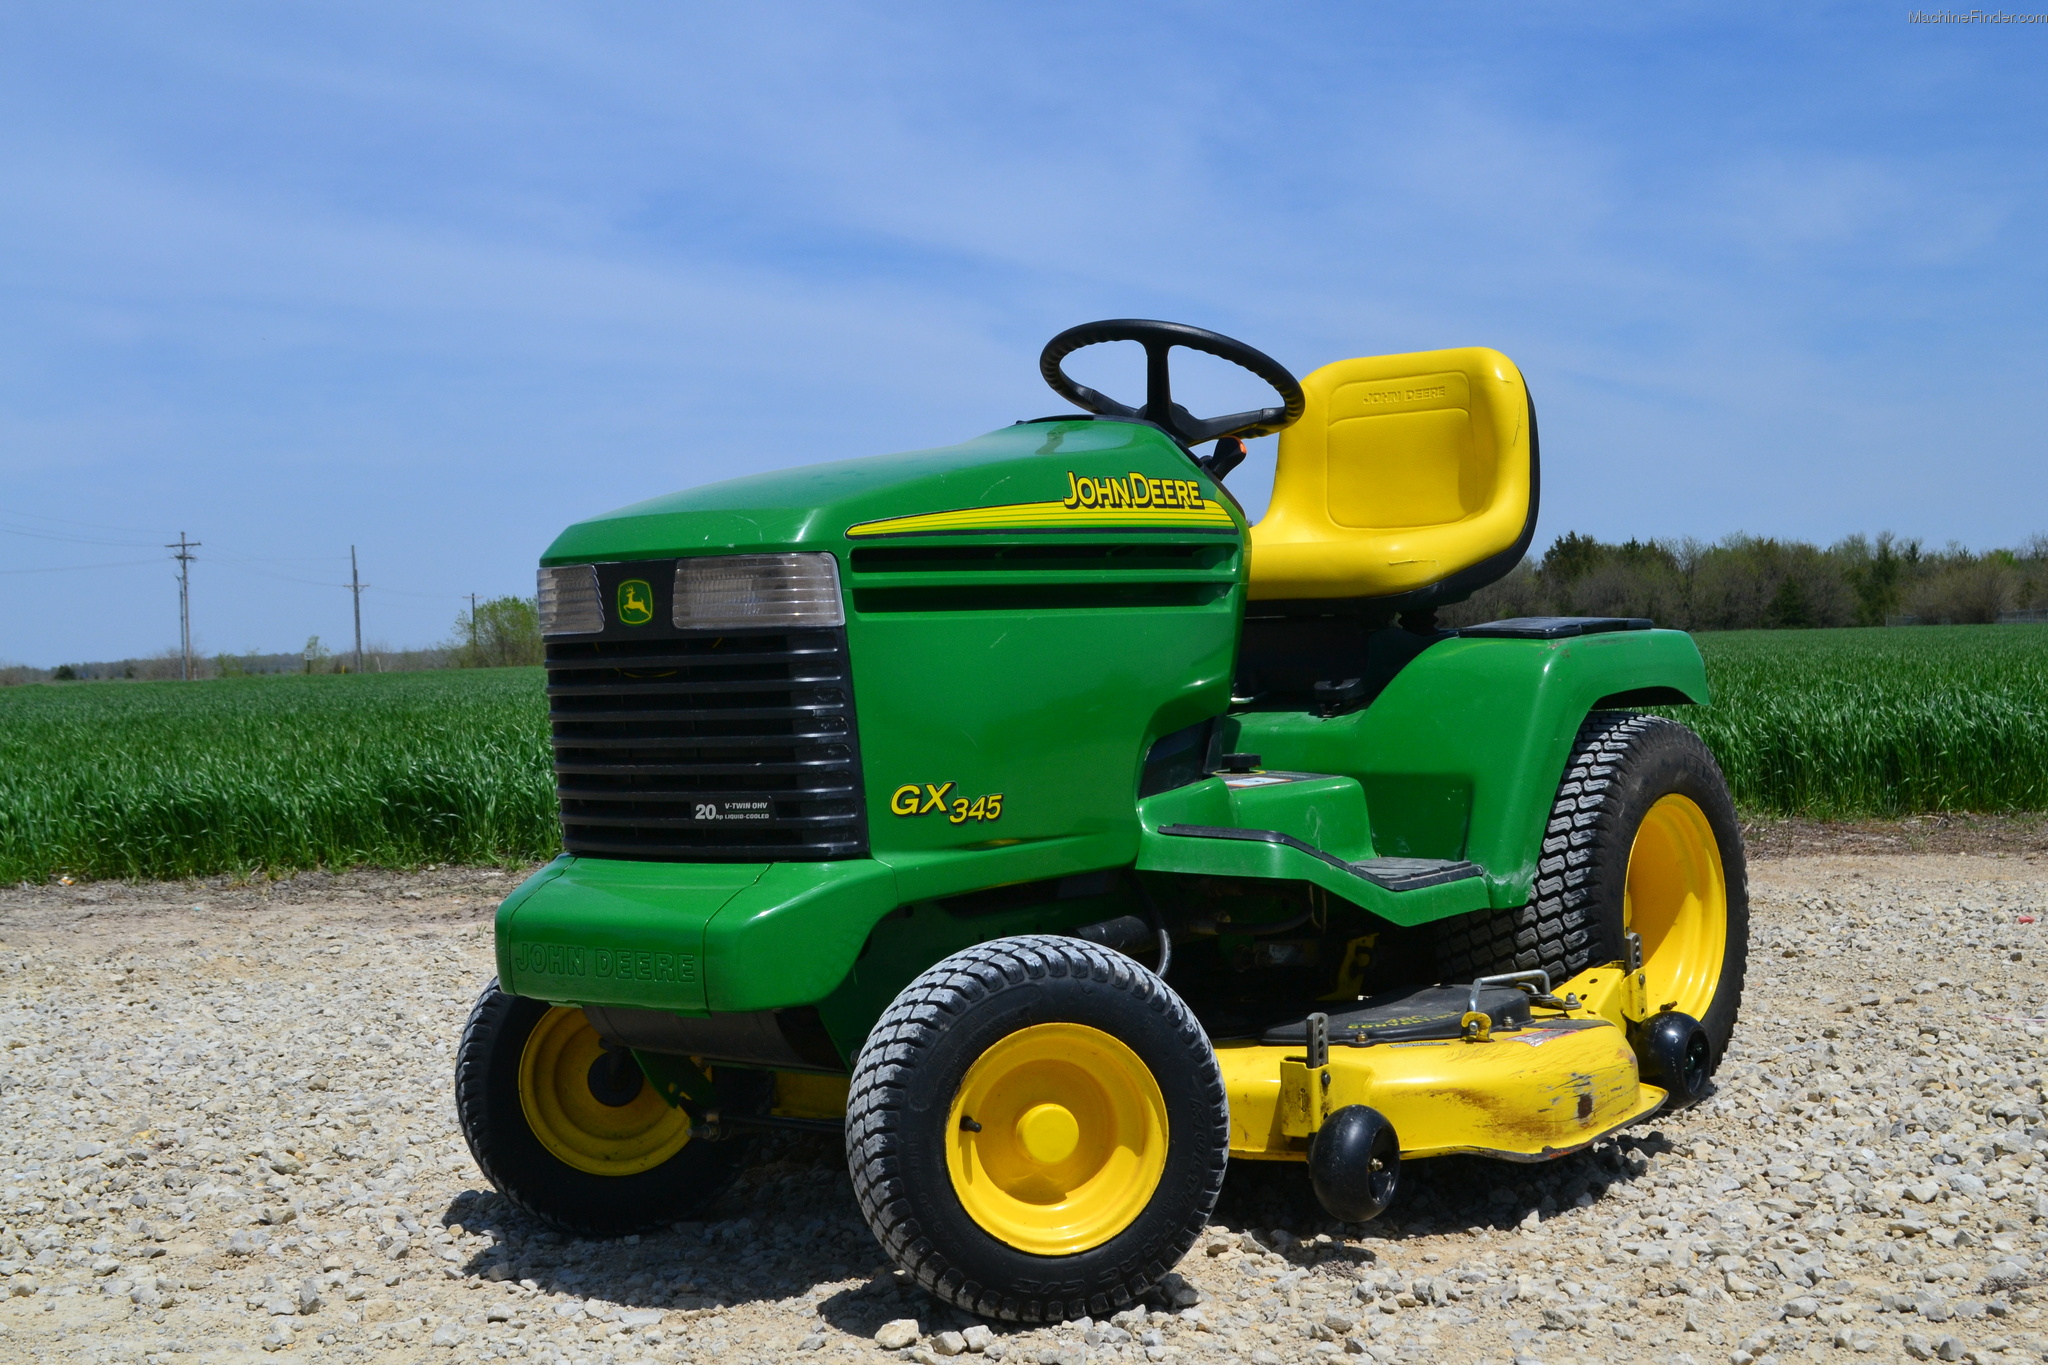 John Deere 345 Lawn Tractor At Garden Equipment